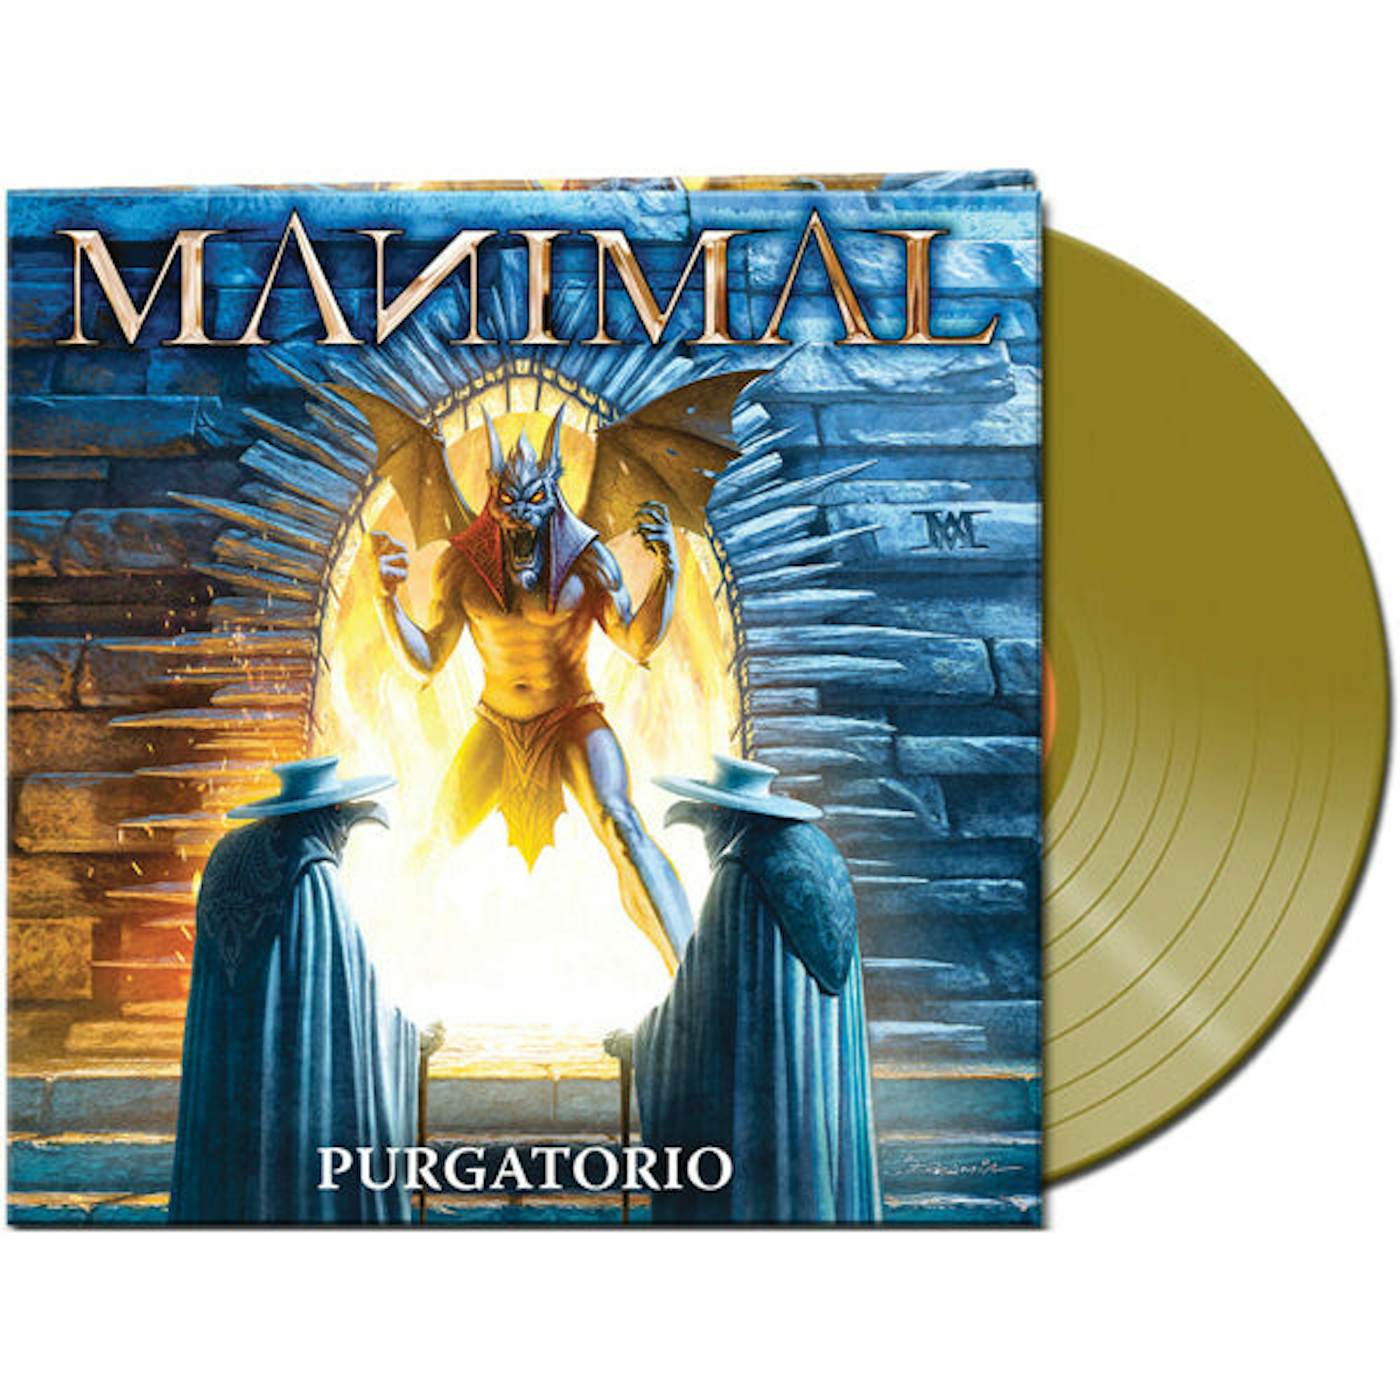 Manimal LP - Purgatorio (Gold Vinyl)